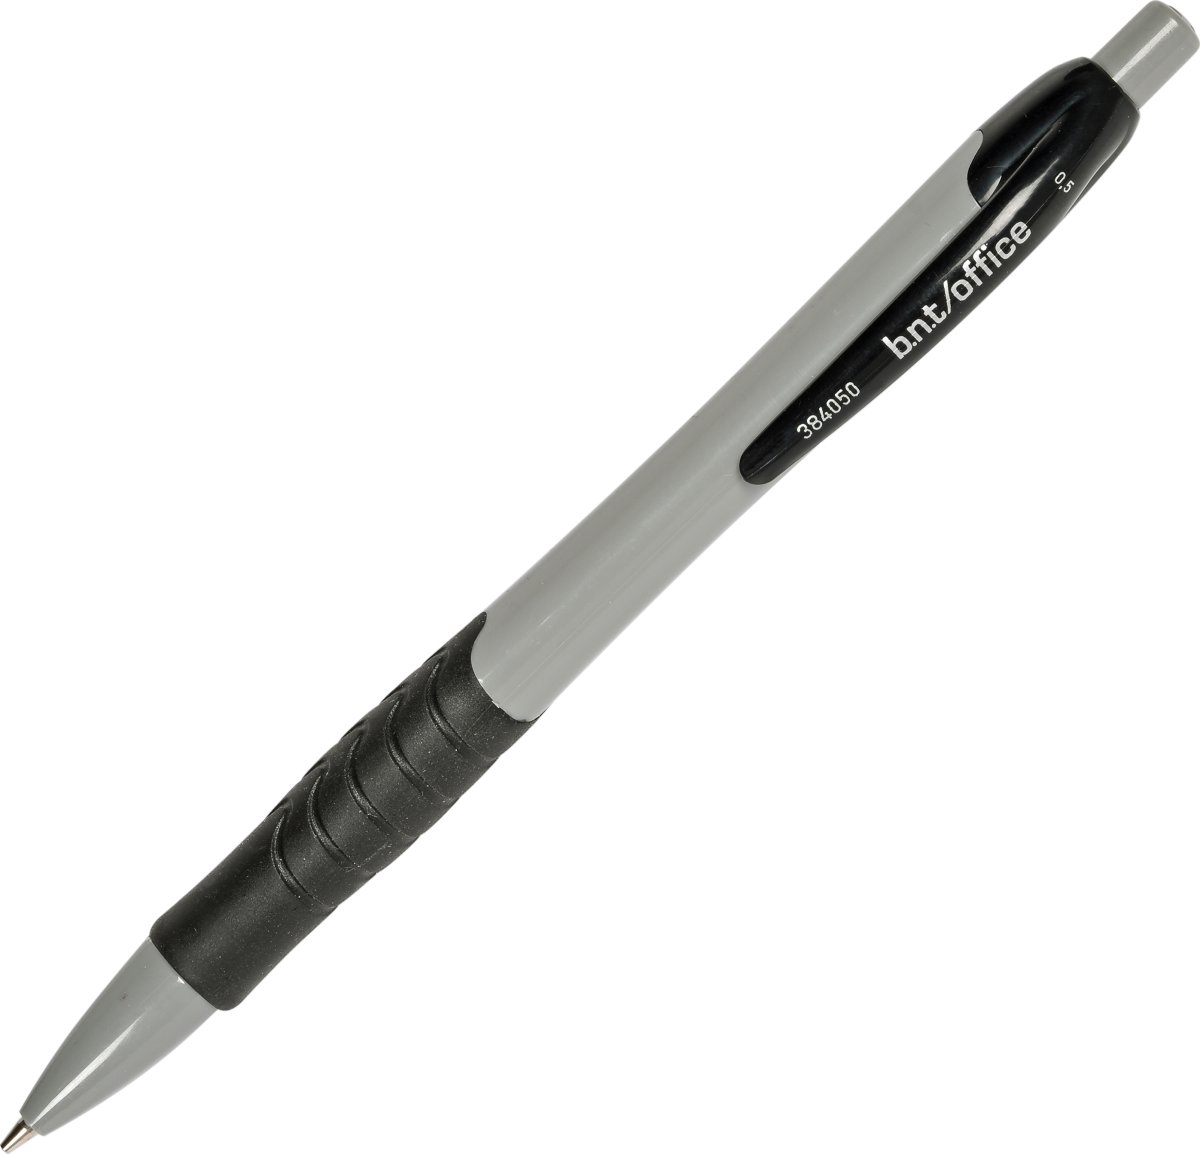 Penna, grå med gummigrepp, 0,5 mm